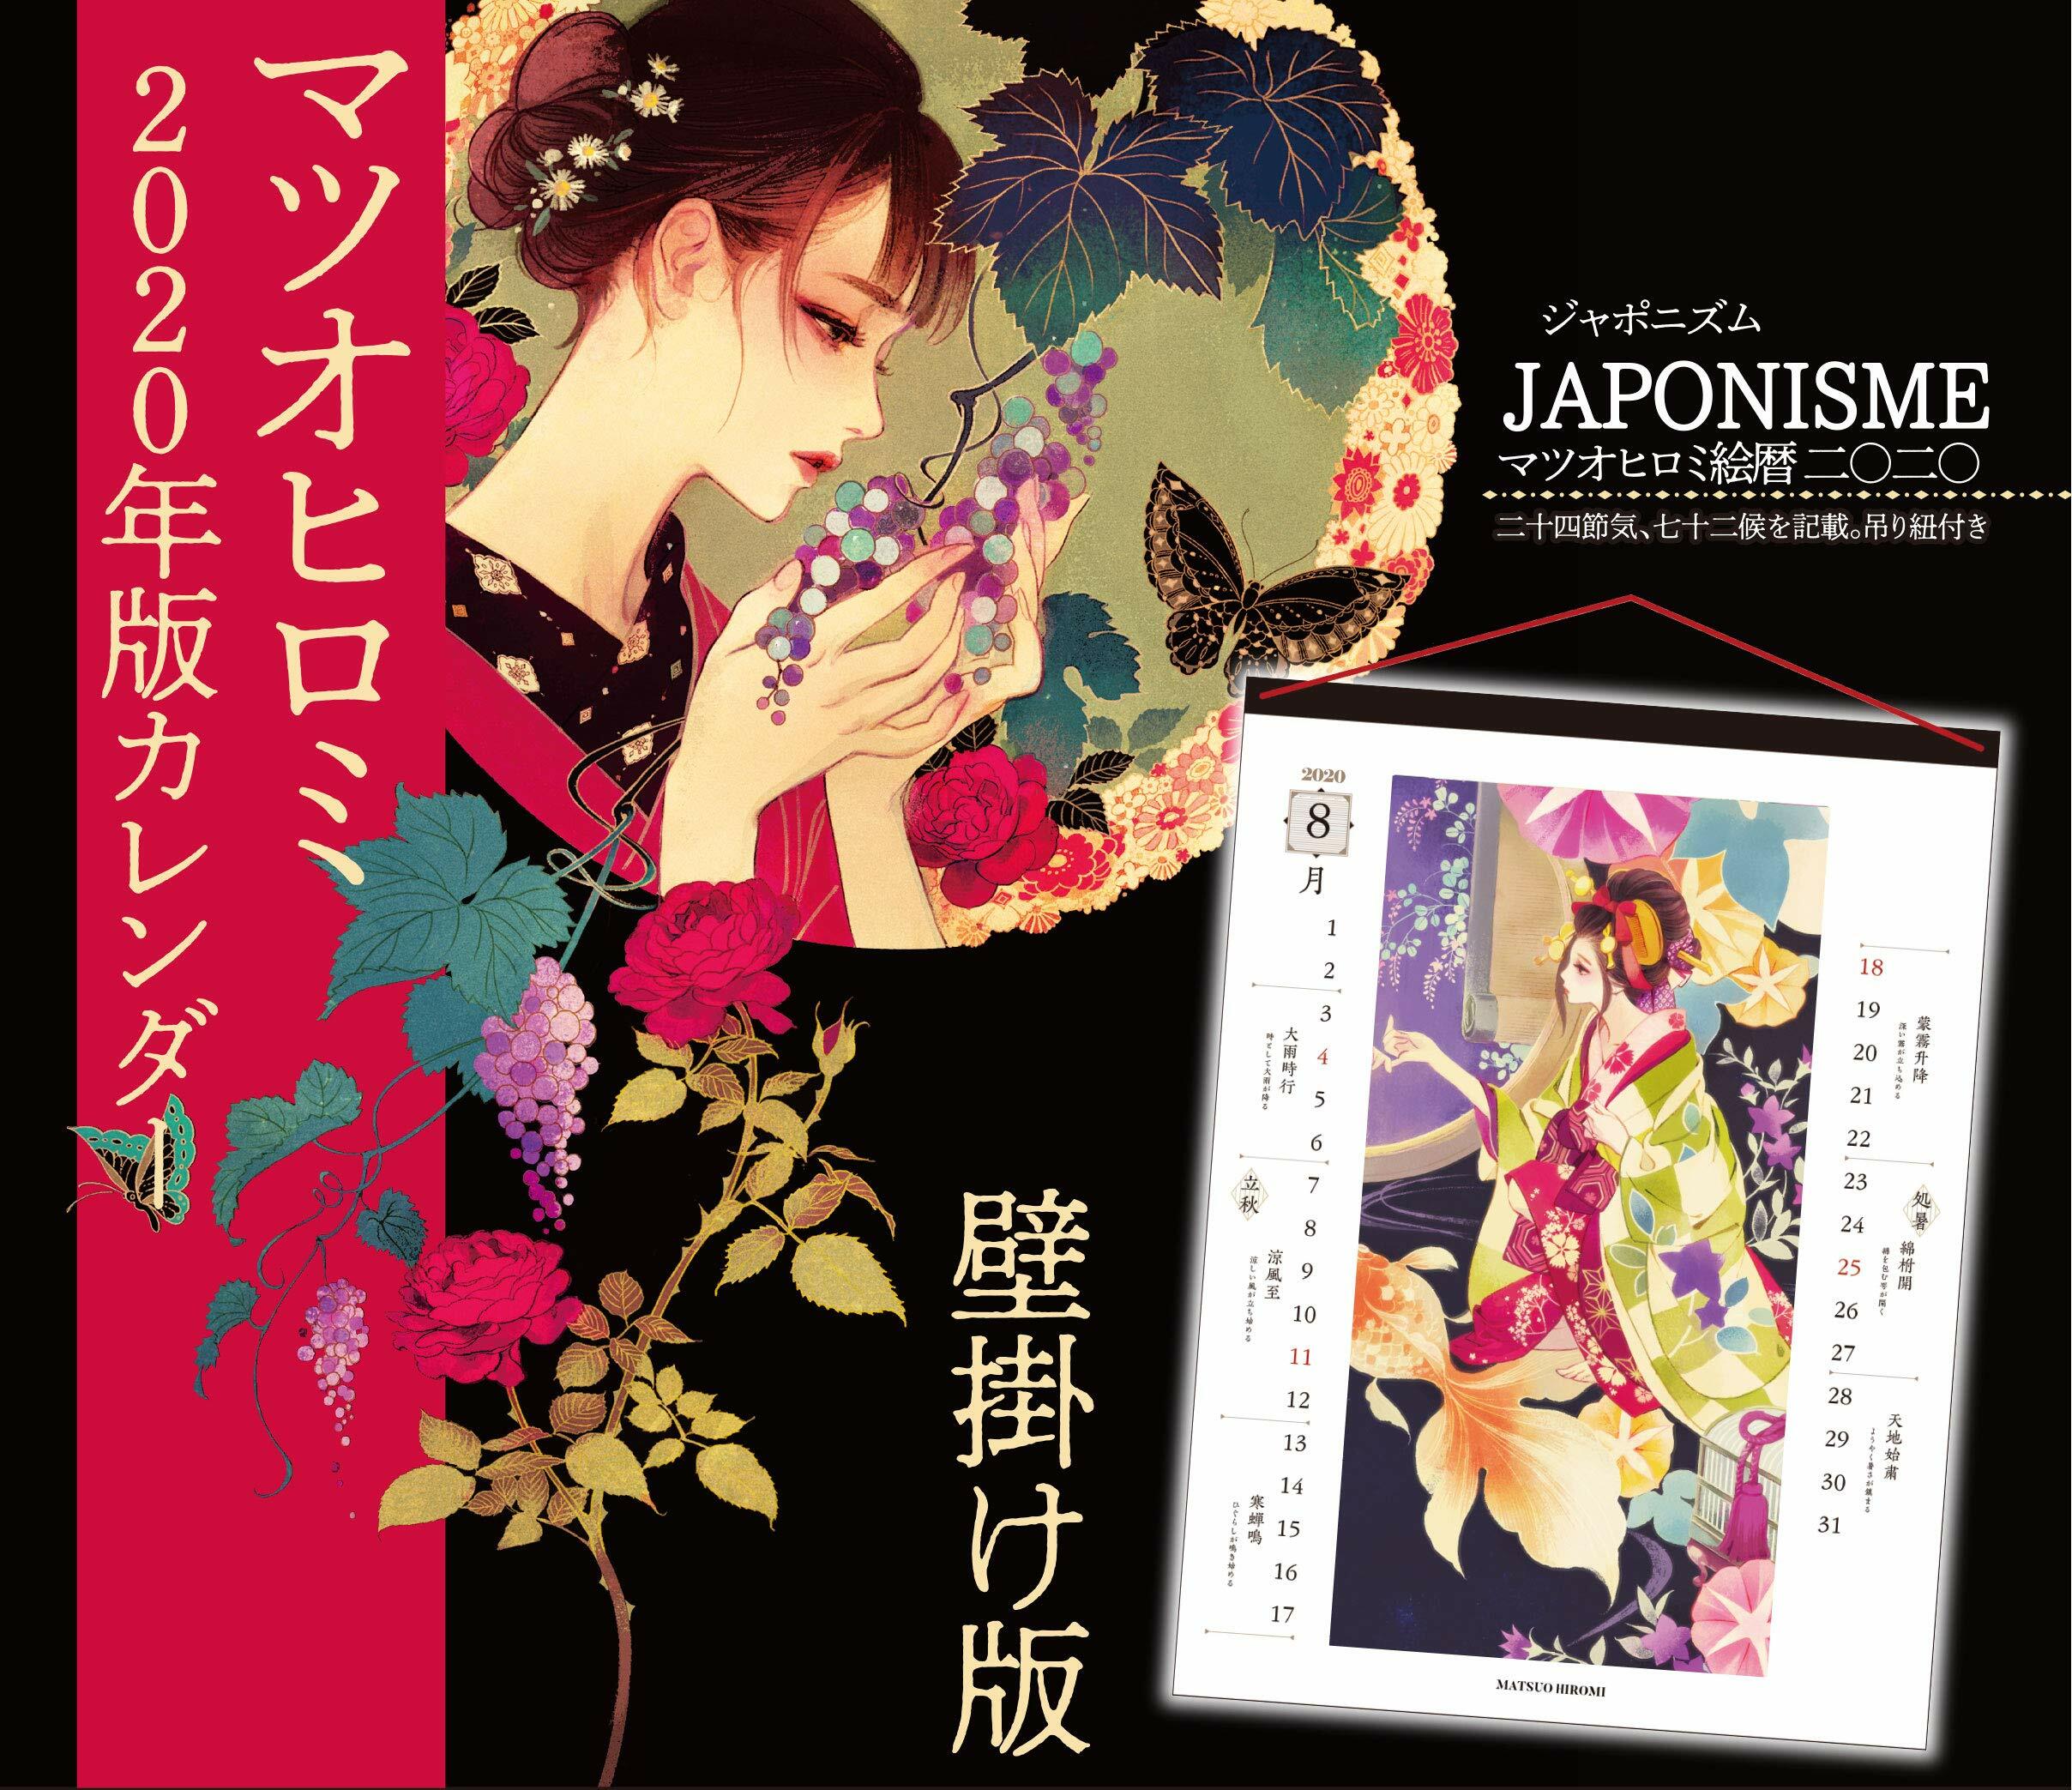 【壁掛け版】JAPONISME マツオヒロミ繪曆二0二0